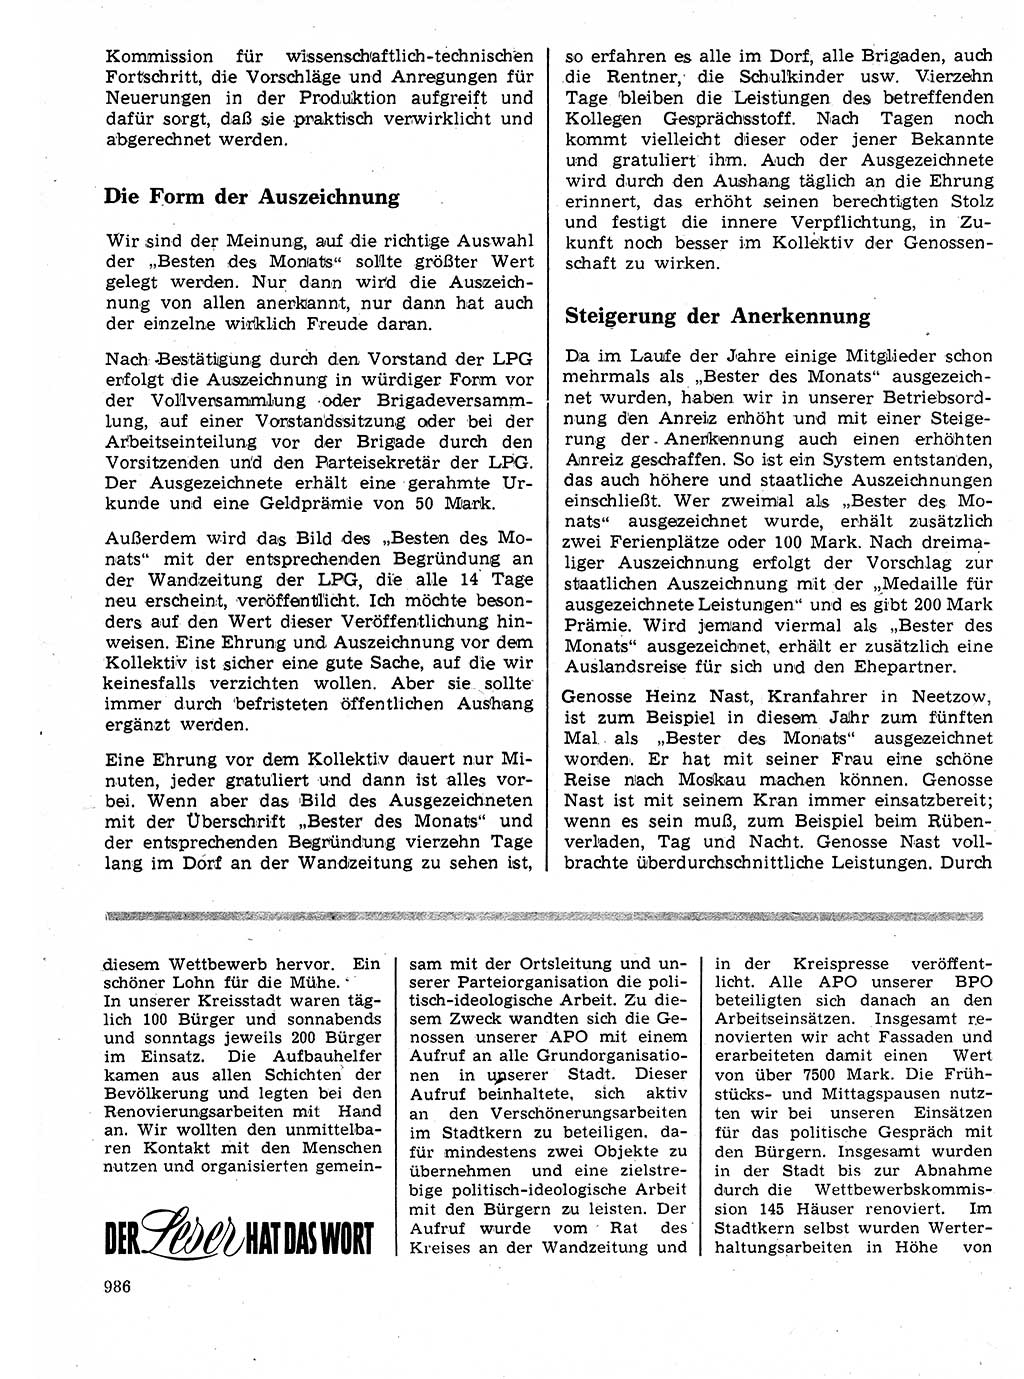 Neuer Weg (NW), Organ des Zentralkomitees (ZK) der SED (Sozialistische Einheitspartei Deutschlands) für Fragen des Parteilebens, 24. Jahrgang [Deutsche Demokratische Republik (DDR)] 1969, Seite 986 (NW ZK SED DDR 1969, S. 986)